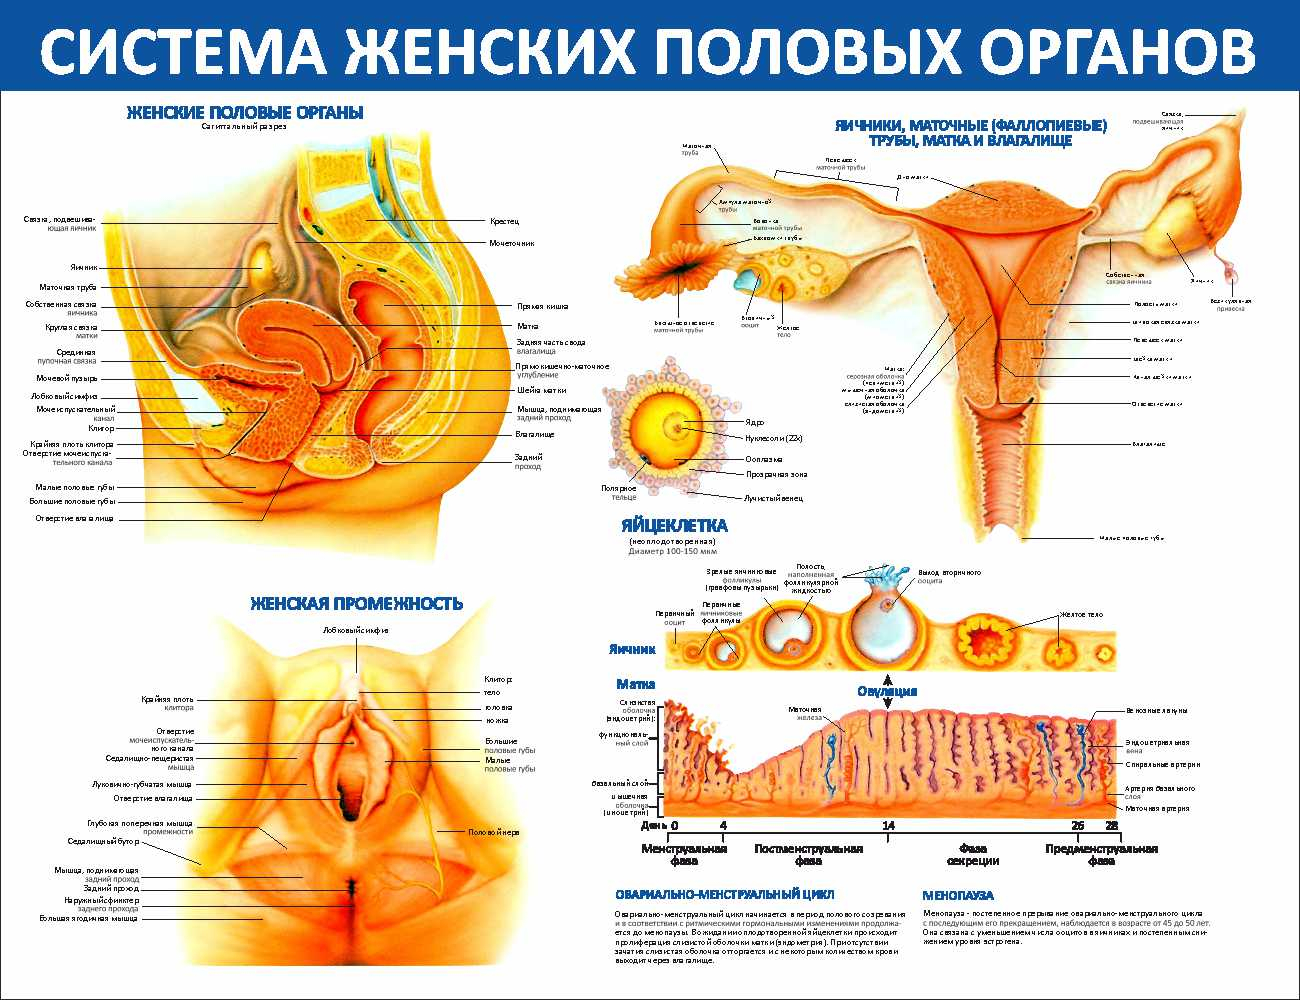 Название органов женской половой системы. Органы женской половой системы. Анатомия женской половой системы. Анатомия женского полового органа. Схема женской репродуктивной системы.